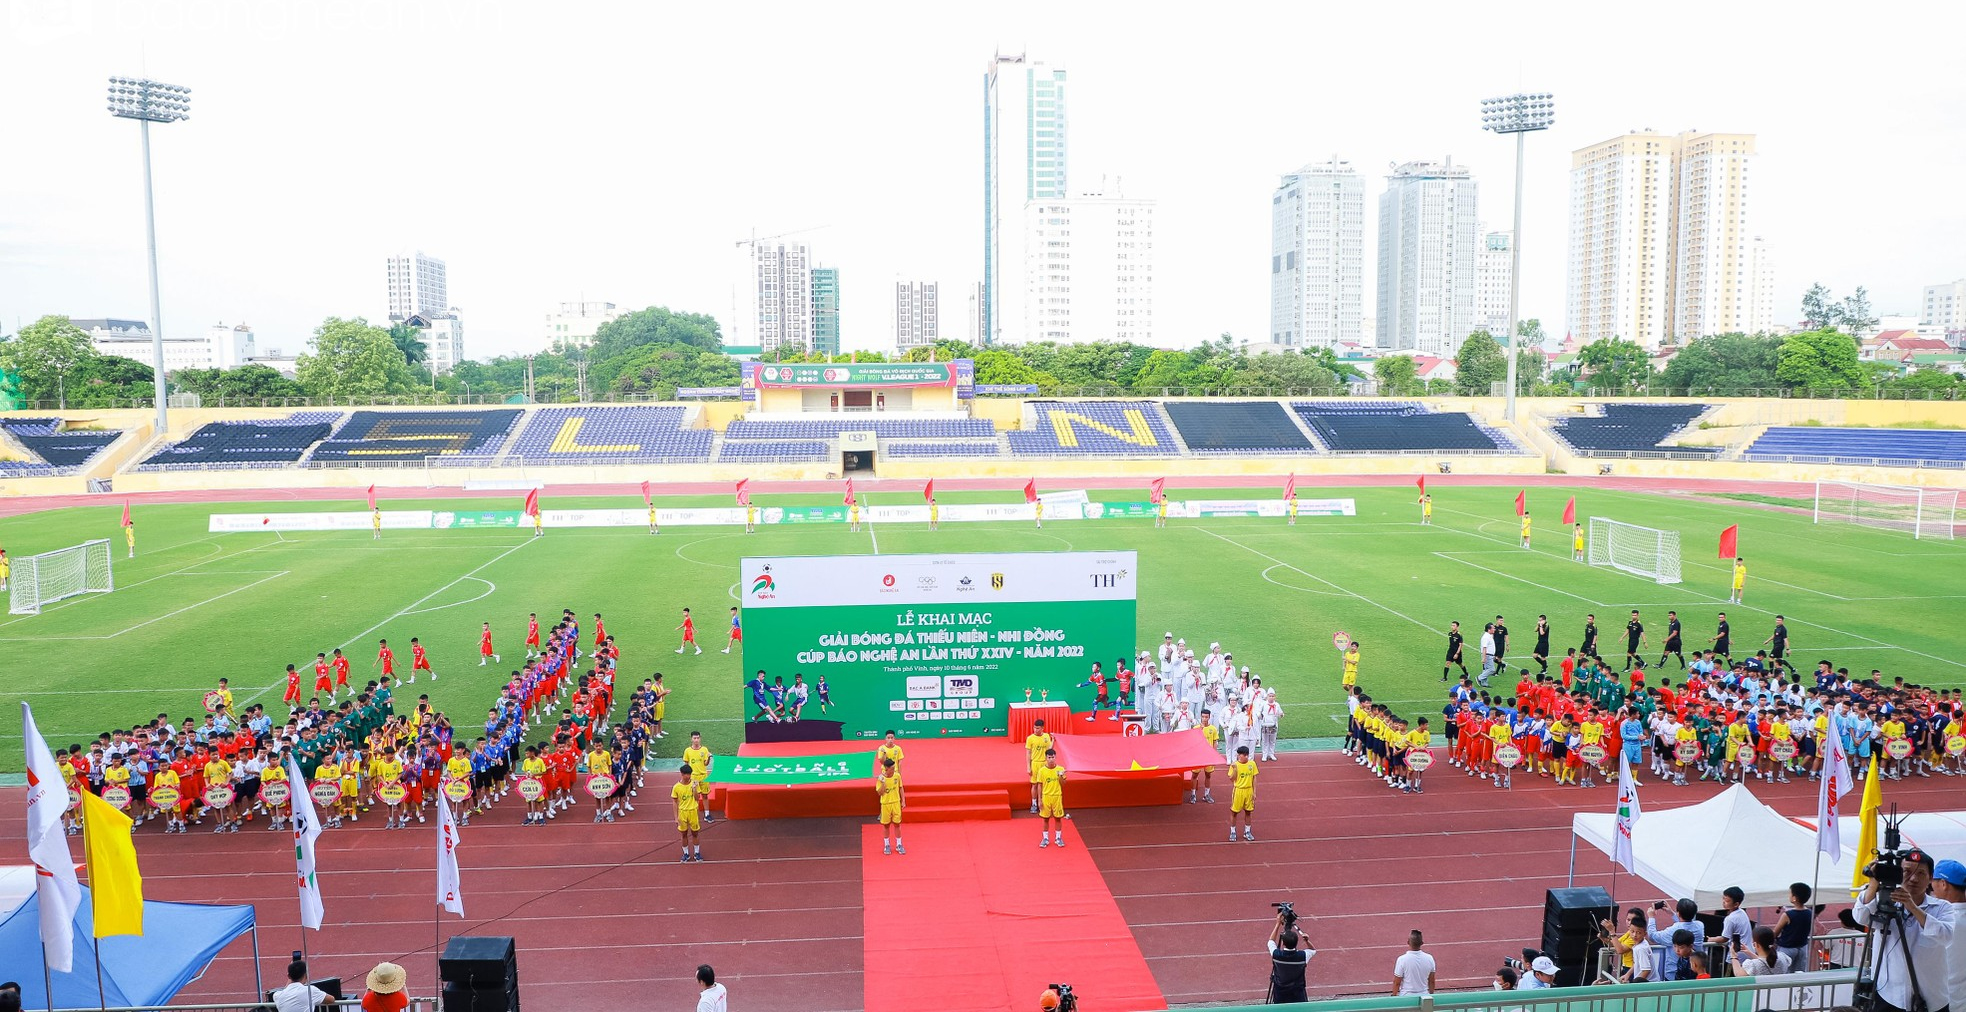 Khai mạc Giải bóng đá Thiếu niên - Nhi đồng Cúp Báo Nghệ An lần thứ 24 năm 2022 tại Sân vận động Vinh.